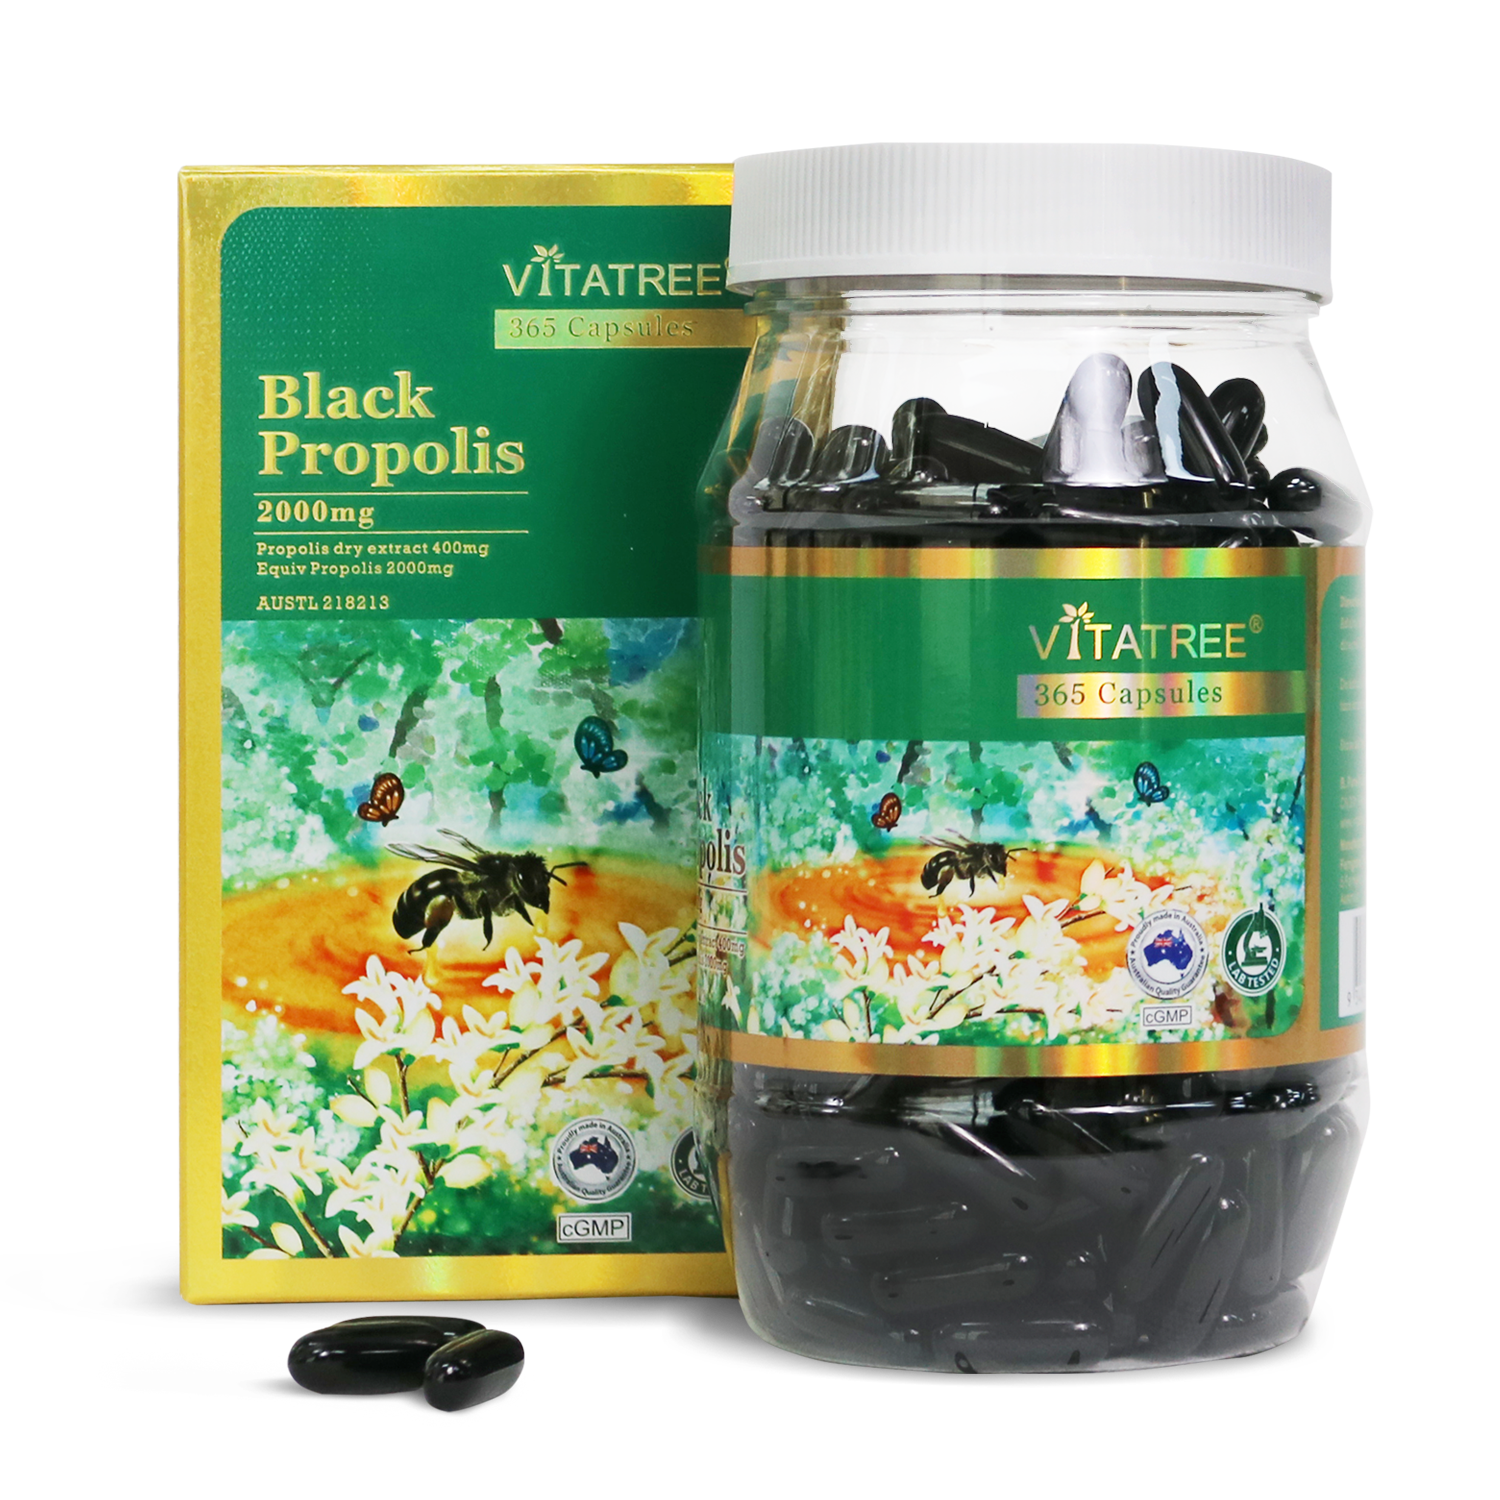 Viên uống Keo ong đen Vitatree Black Propolis 2000mg, hộp 365 vien, nhập khẩu Úc